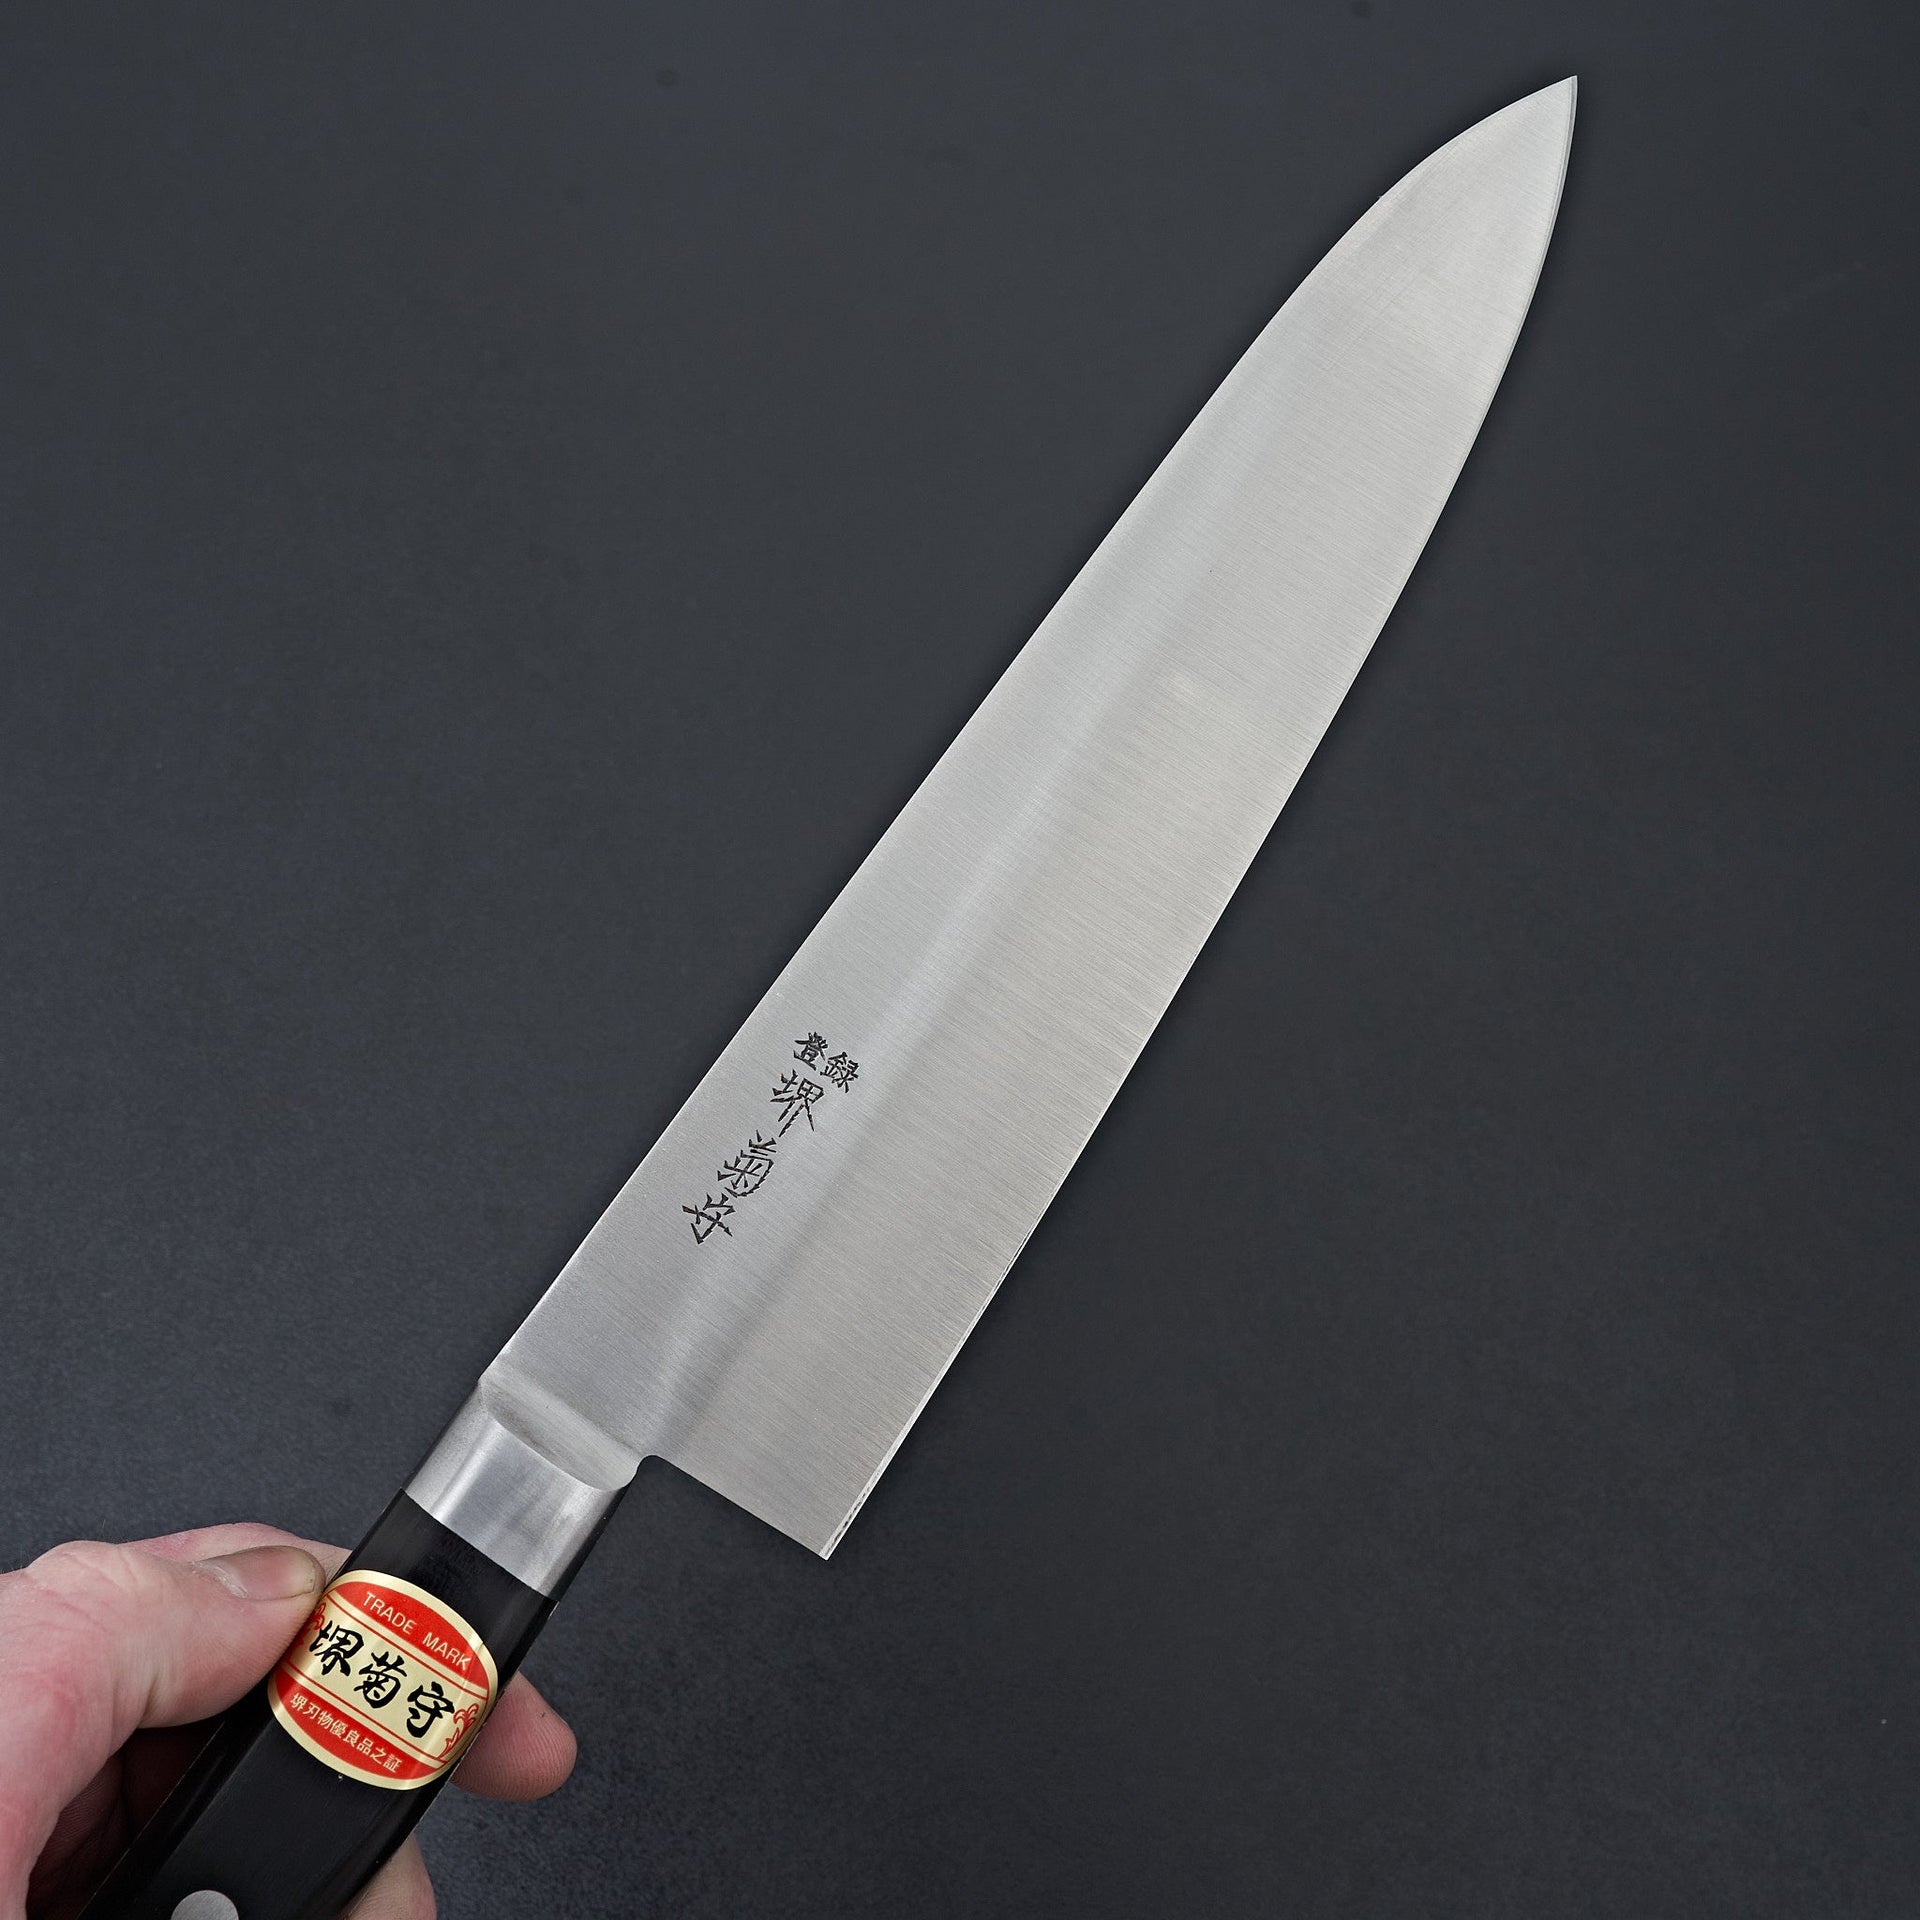 Sakai Kikumori Nihonko Carbon Gyuto 240mm-Knife-Sakai Kikumori-Carbon Knife Co